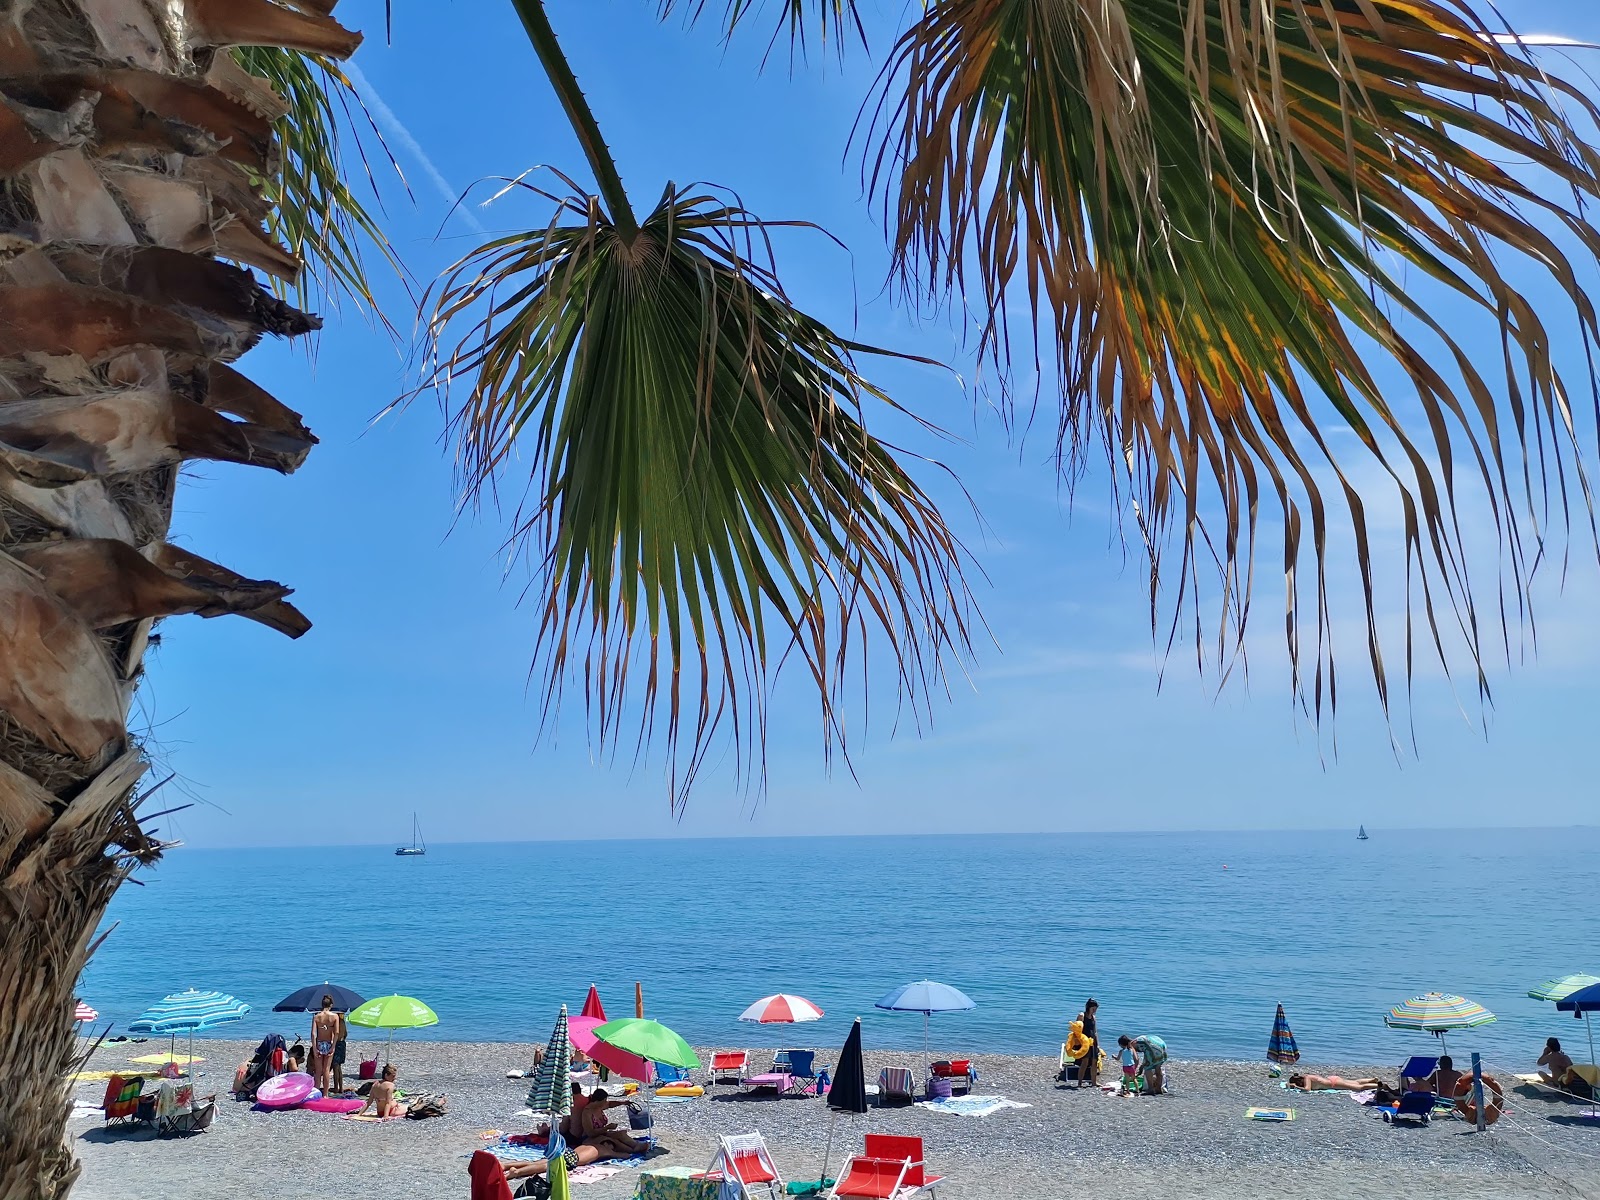 Foto von Spiaggia Pietra Ligure mit tolle buchten